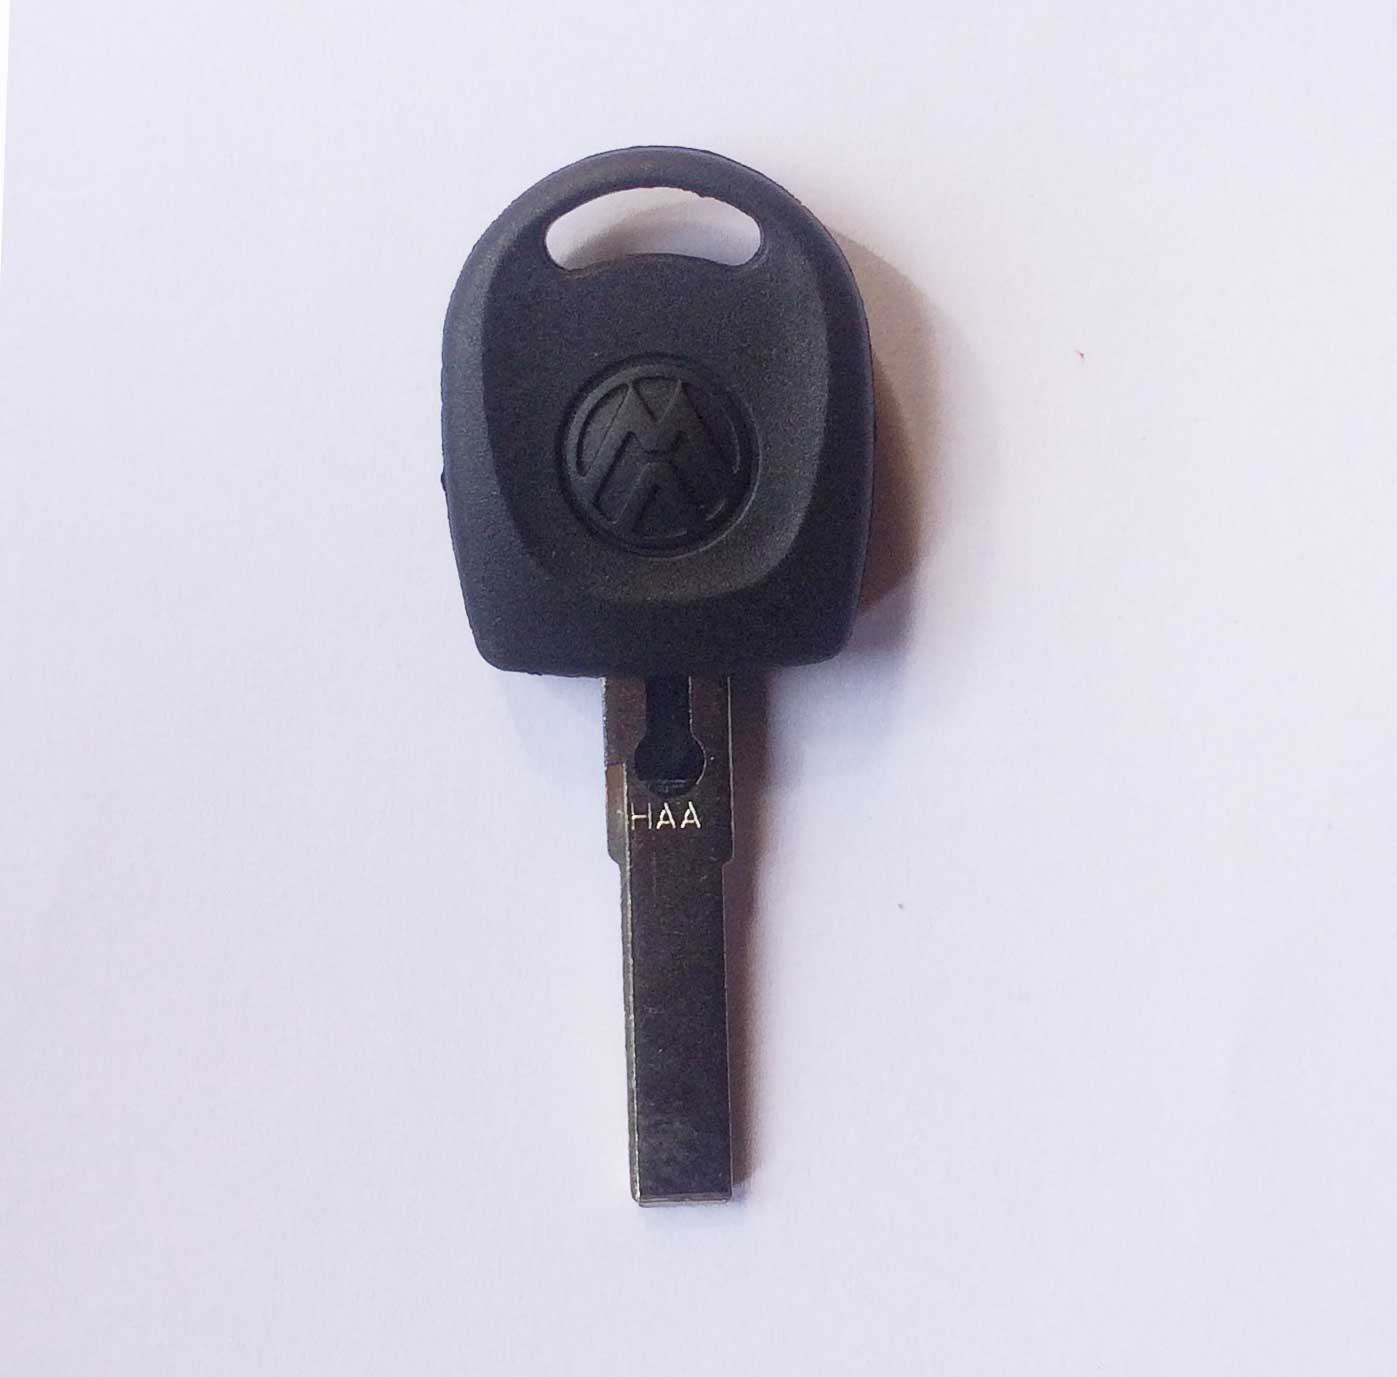 VW Valet transponder key 